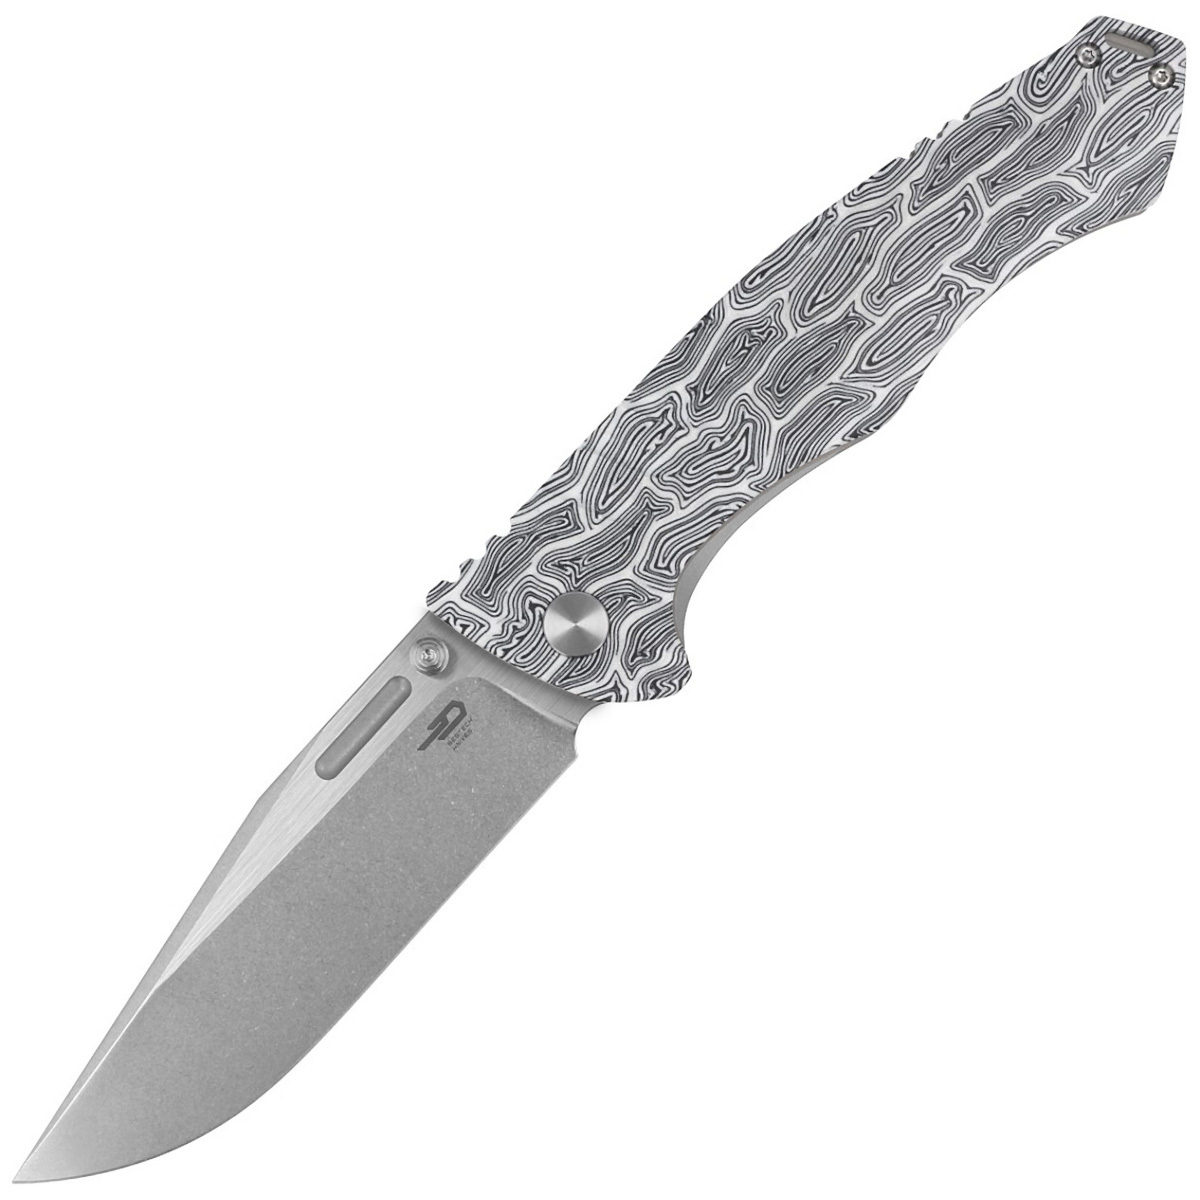 Складной нож Bestech Keen II, сталь S35VN, рукоять G10/титан